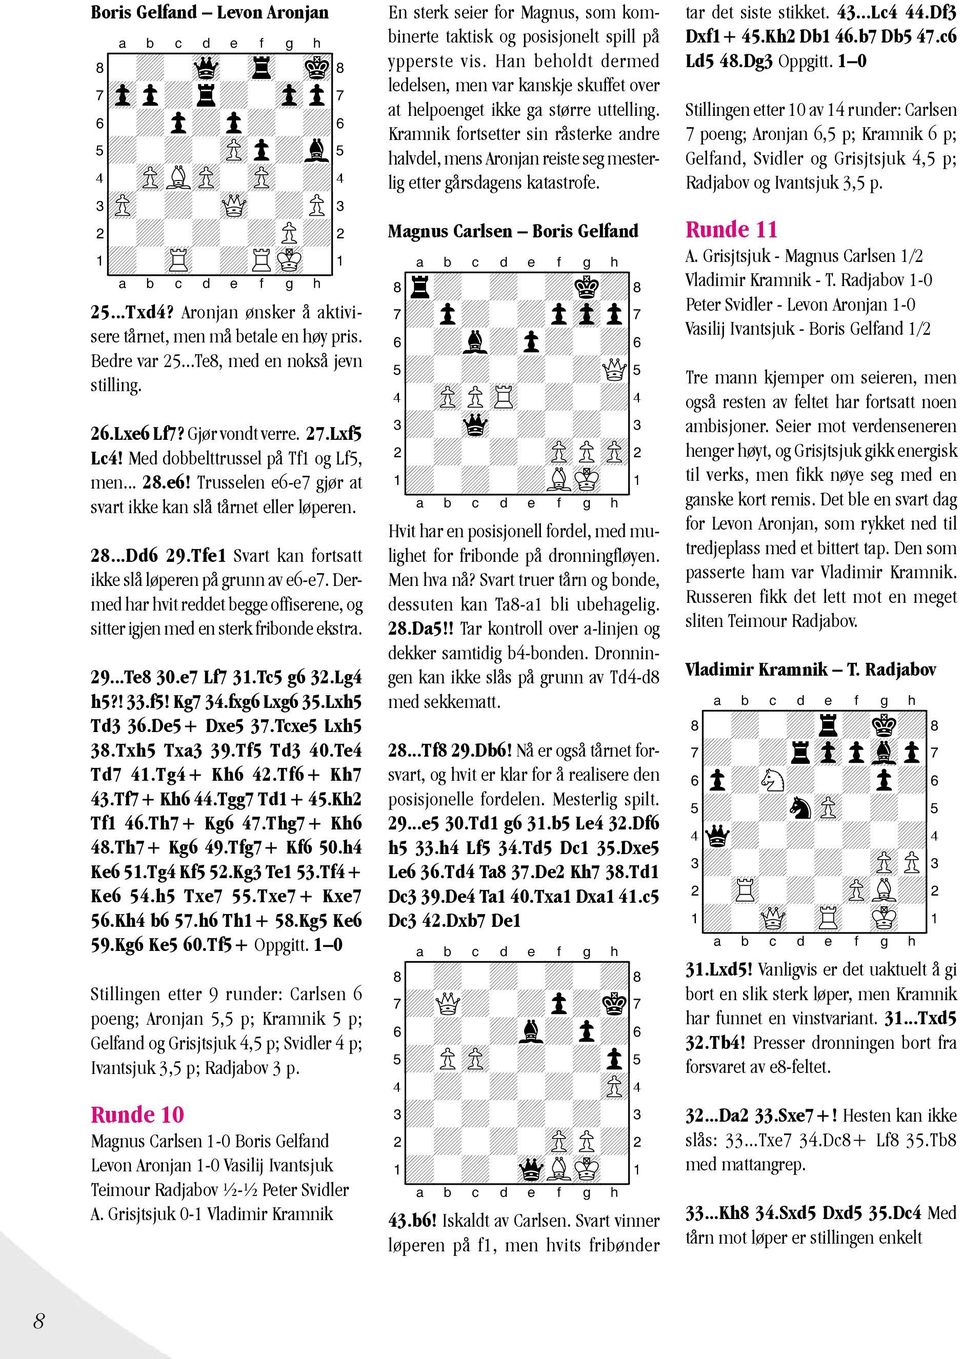 e6! Trusselen e6-e7 gjør at svart ikke kan slå tårnet eller løperen. 28...Dd6 29.Tfe1 Svart kan fortsatt ikke slå løperen på grunn av e6-e7.